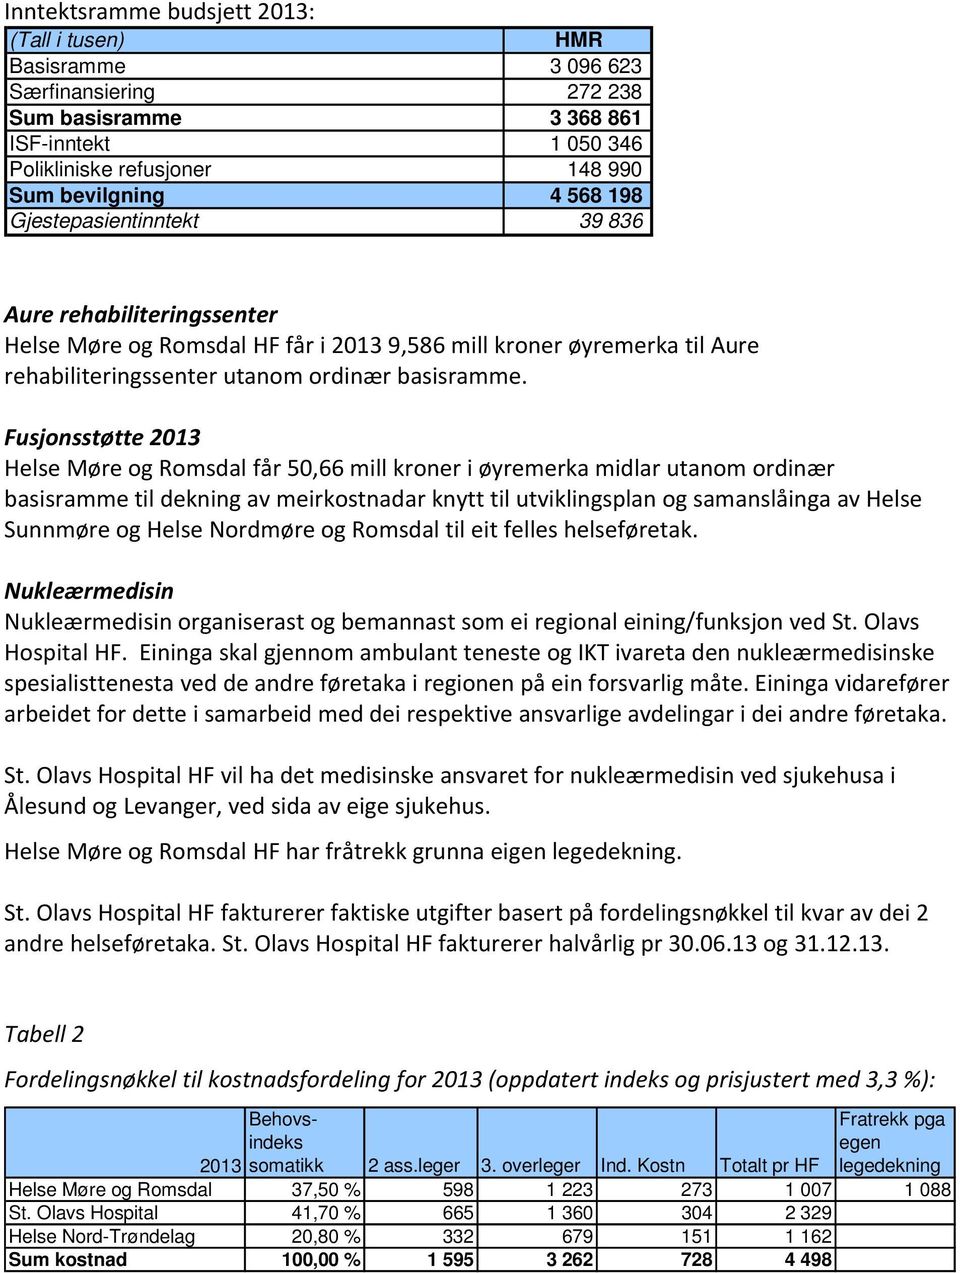 Fusjonsstøtte 2013 Helse Møre og Romsdal får 50,66 mill kroner i øyremerka midlar utanom ordinær basisramme til dekning av meirkostnadar knytt til utviklingsplan og samanslåinga av Helse Sunnmøre og